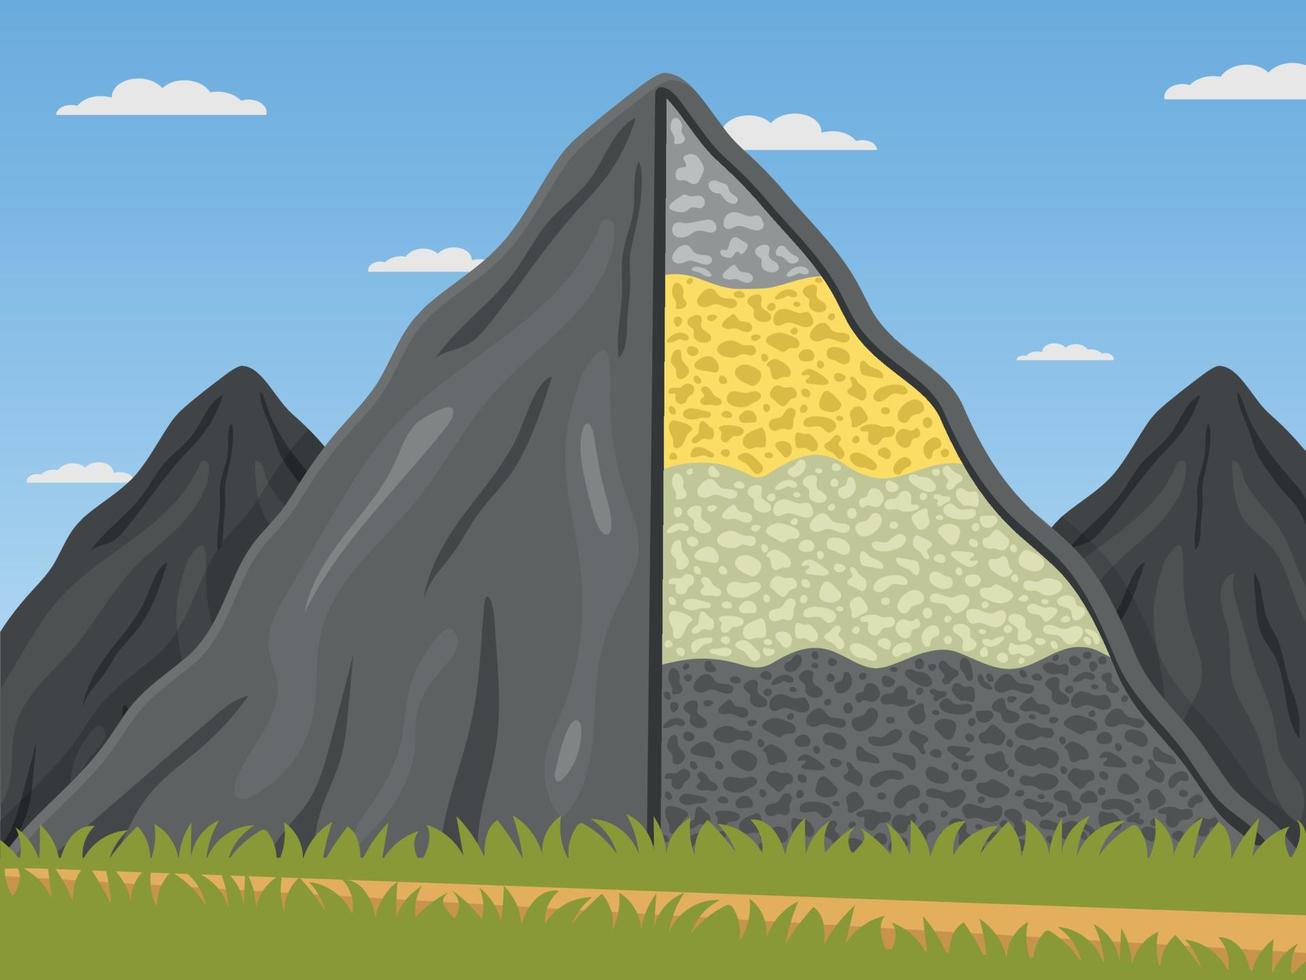 formação rochosa. o diagrama mostra que as montanhas são compostas de ilustração vetorial de rochas em um estilo simples vetor